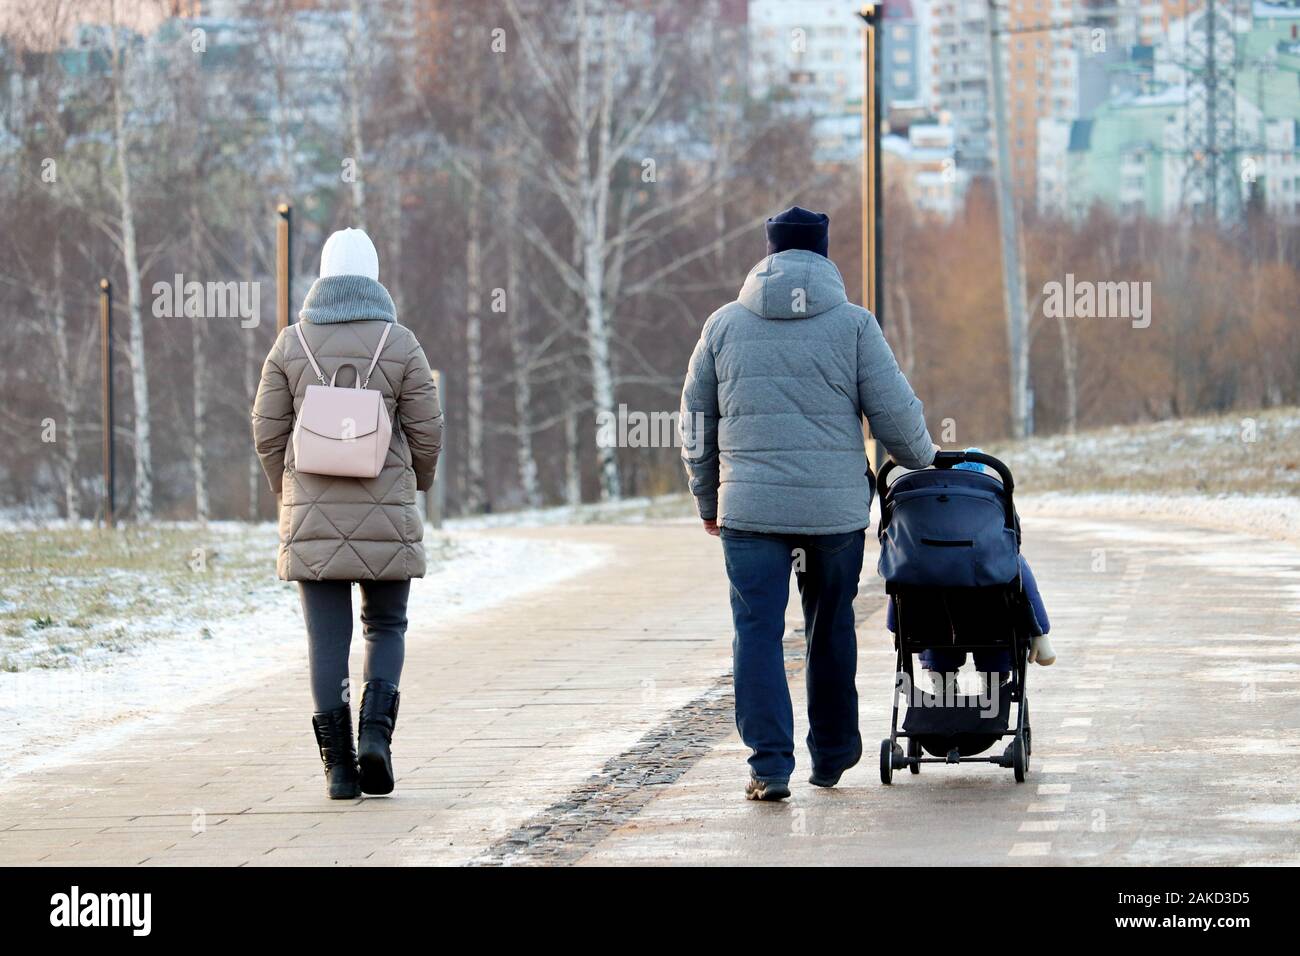 Paar mit einem Baby Stroller Walking im Winter Park während der. Schneewetter, Konzept der Mutterschaft, Eltern mit Kinderwagen Stockfoto